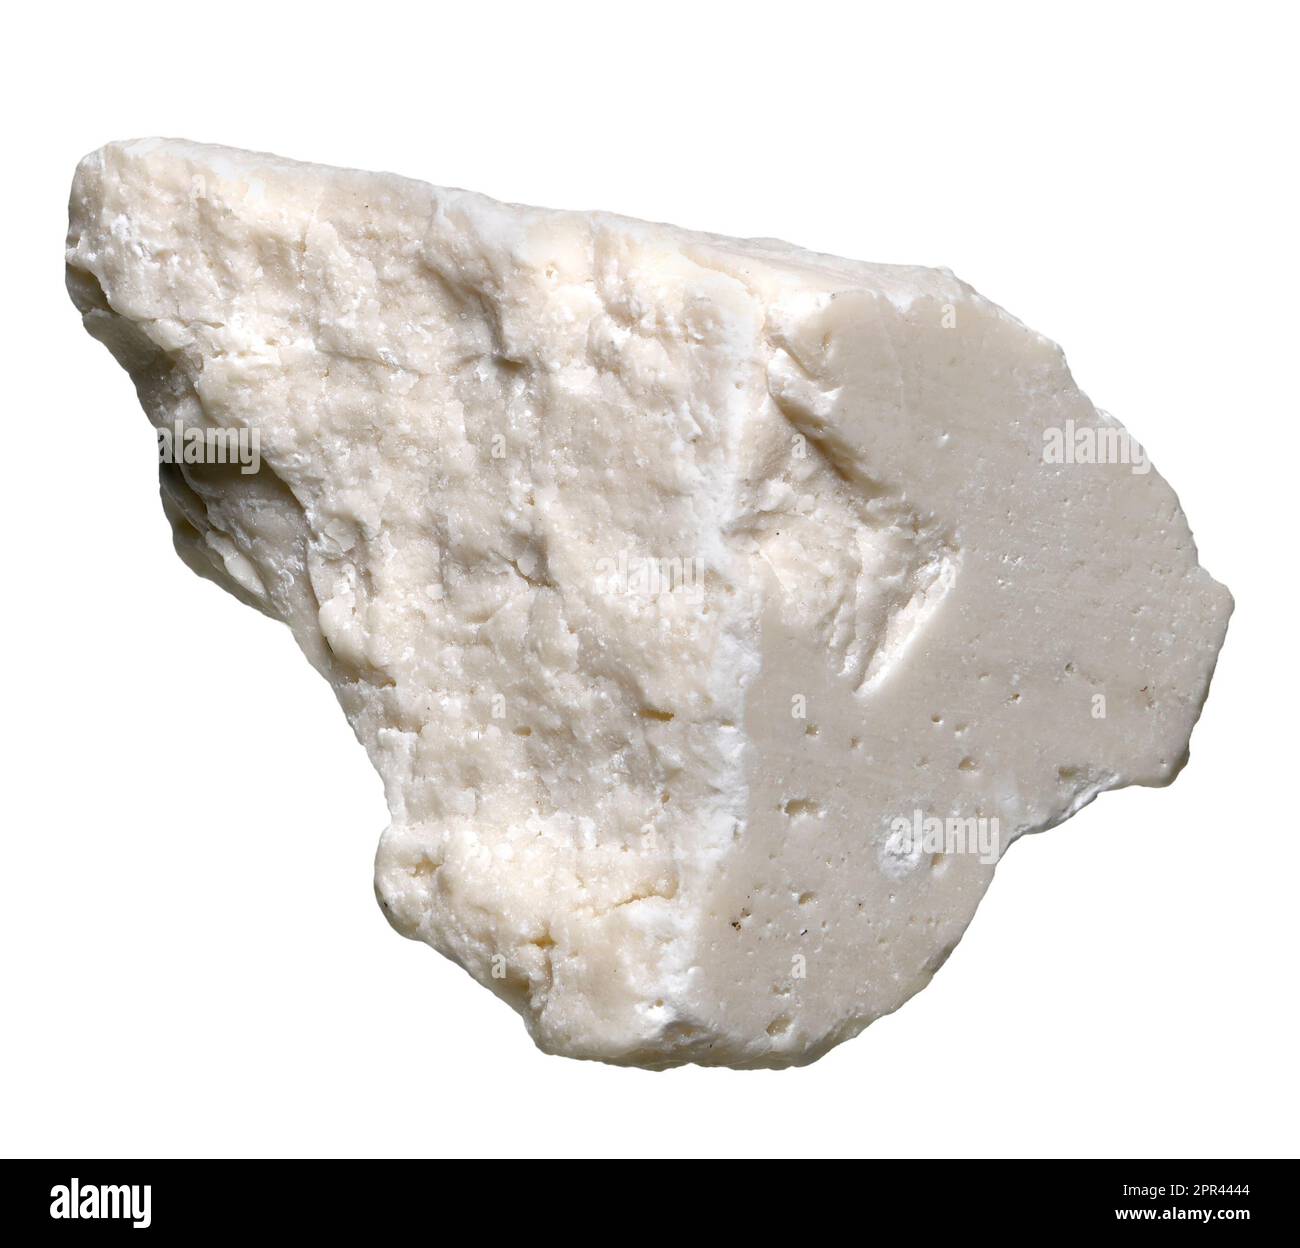 White Aragonite (Calcium carbonate) c1.5cm across Stock Photo